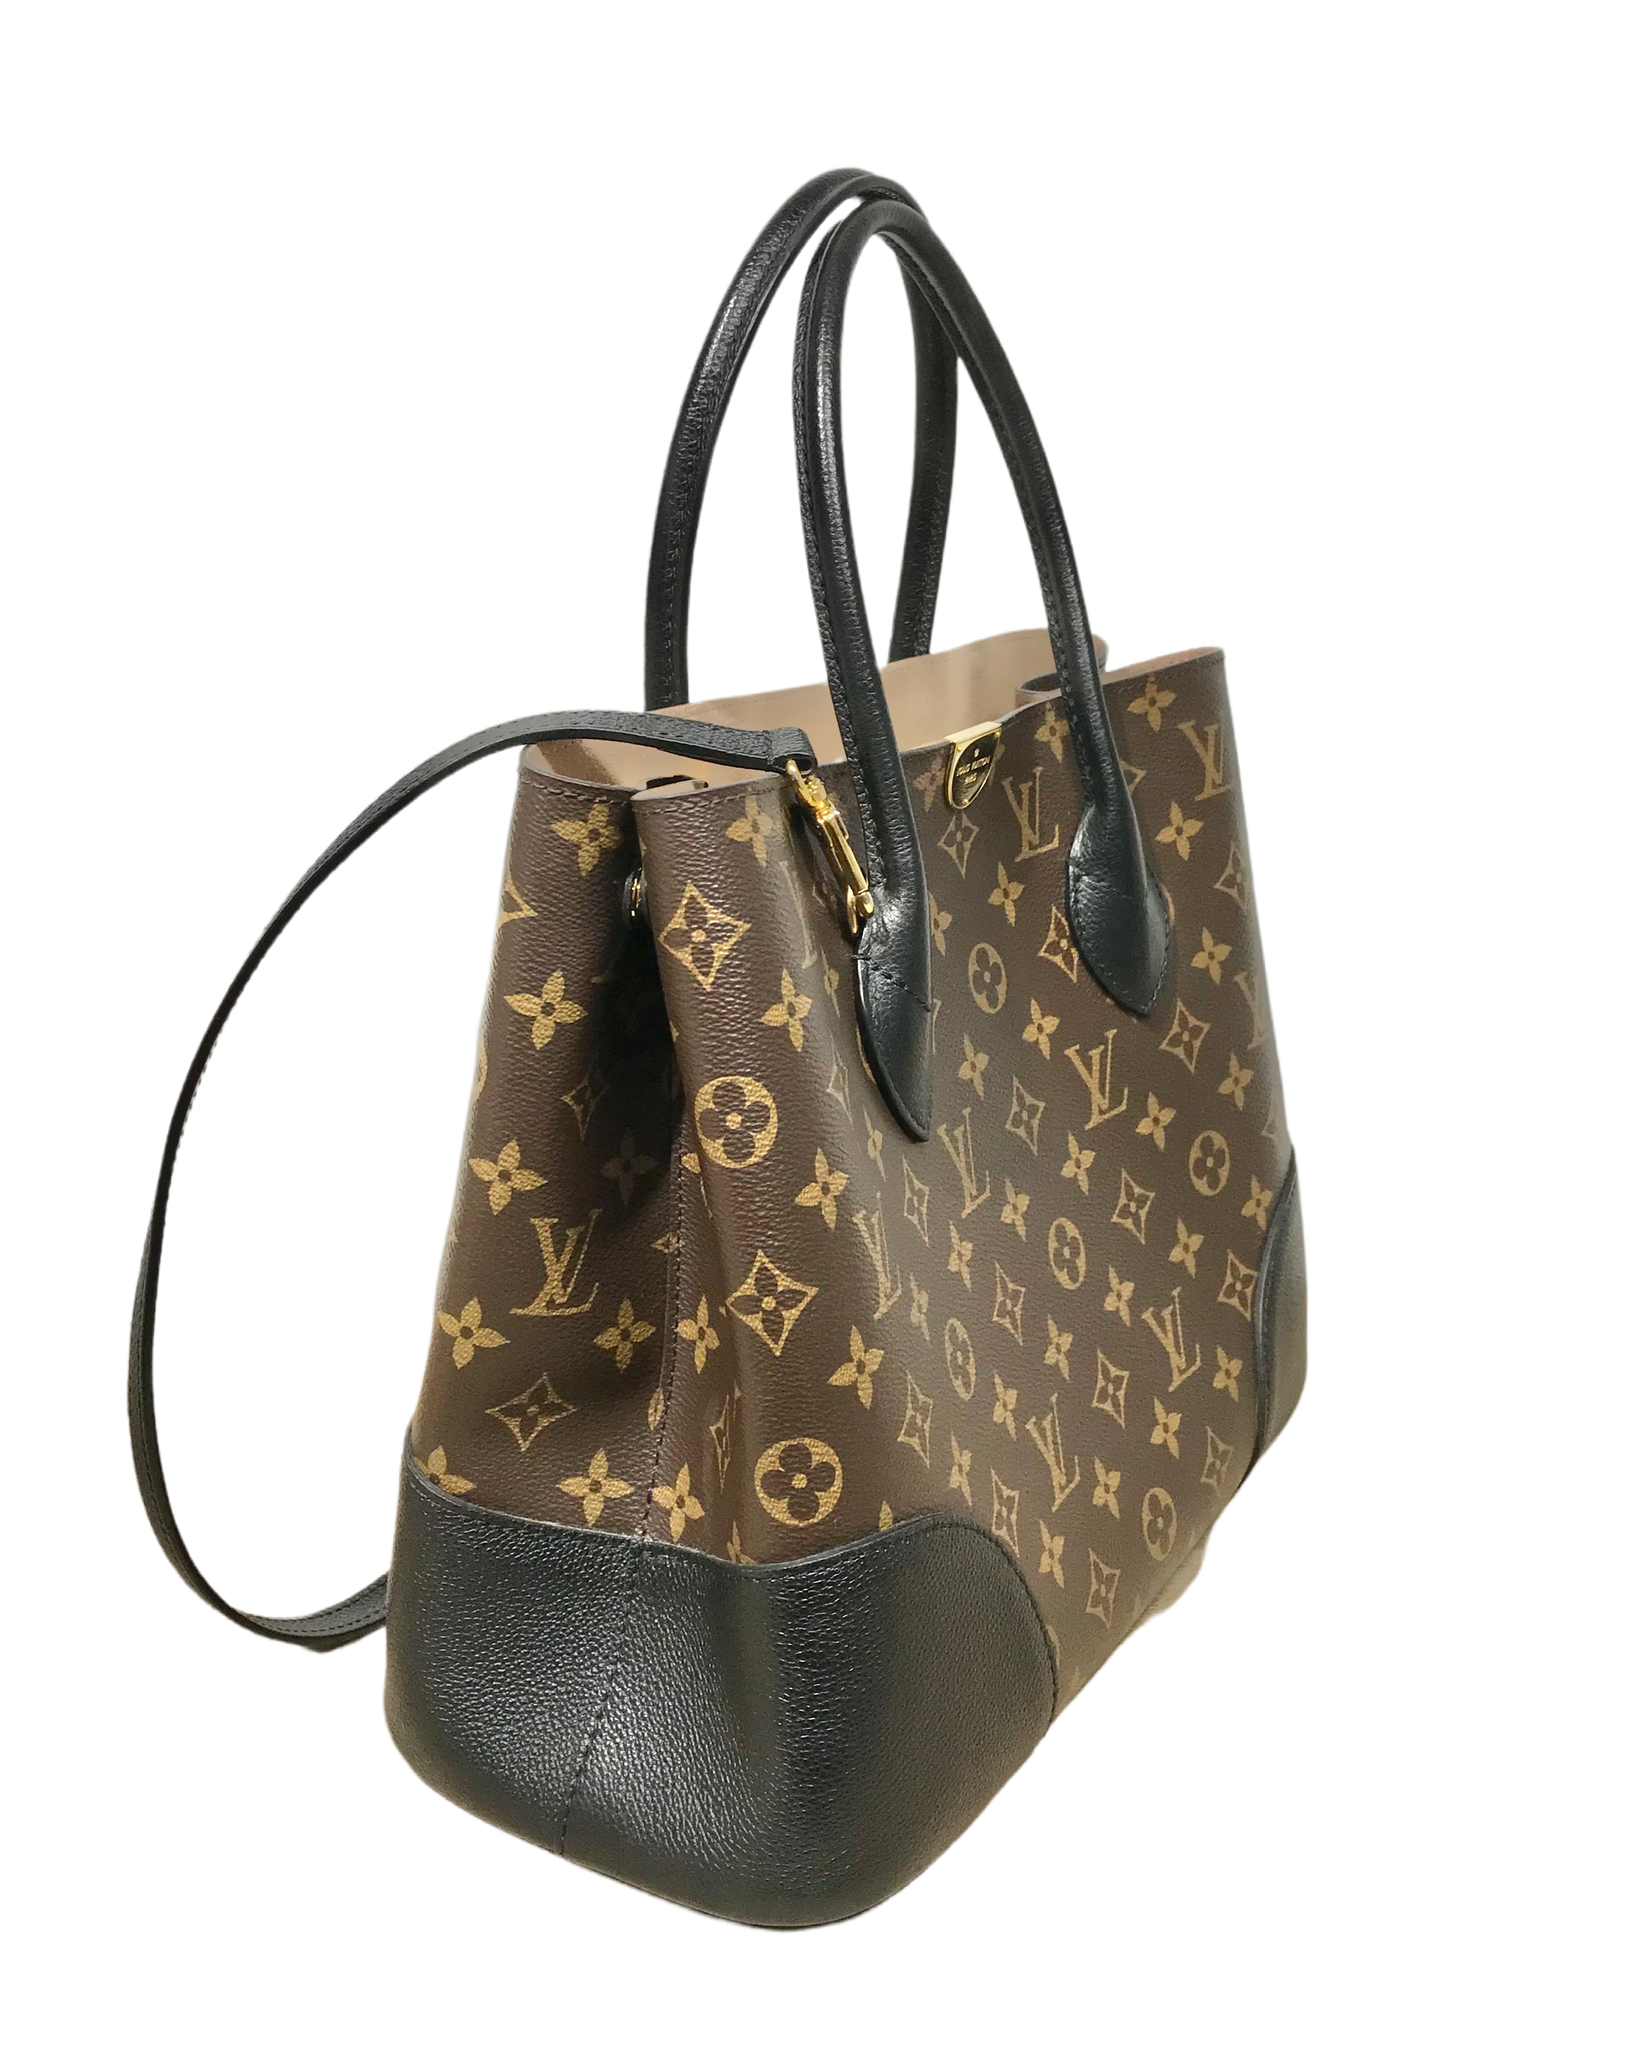 Flandrin Louis Vuitton Handbags for Women - Vestiaire Collective